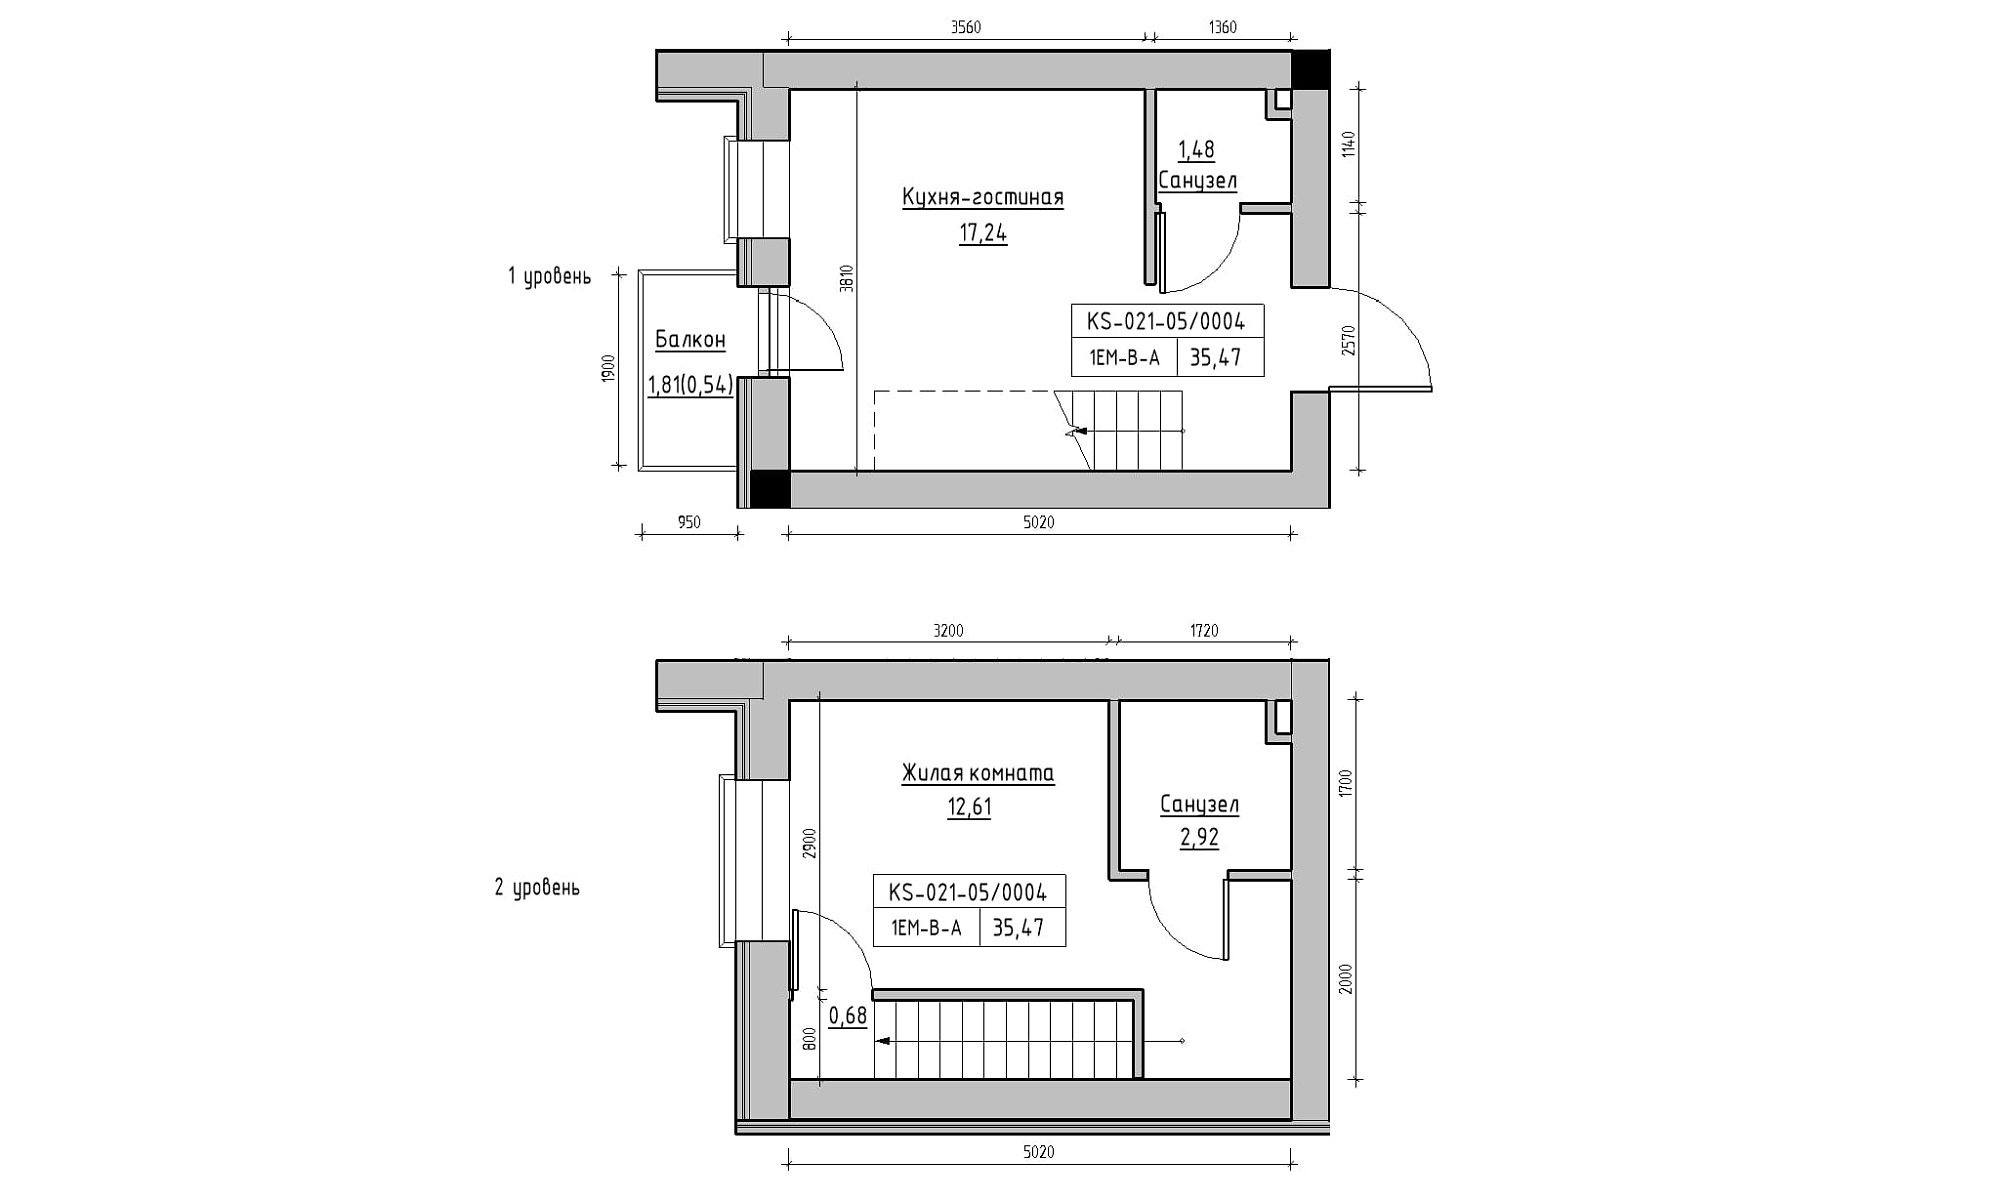 Planning 2-lvl flats area 35.47m2, KS-021-05/0004.